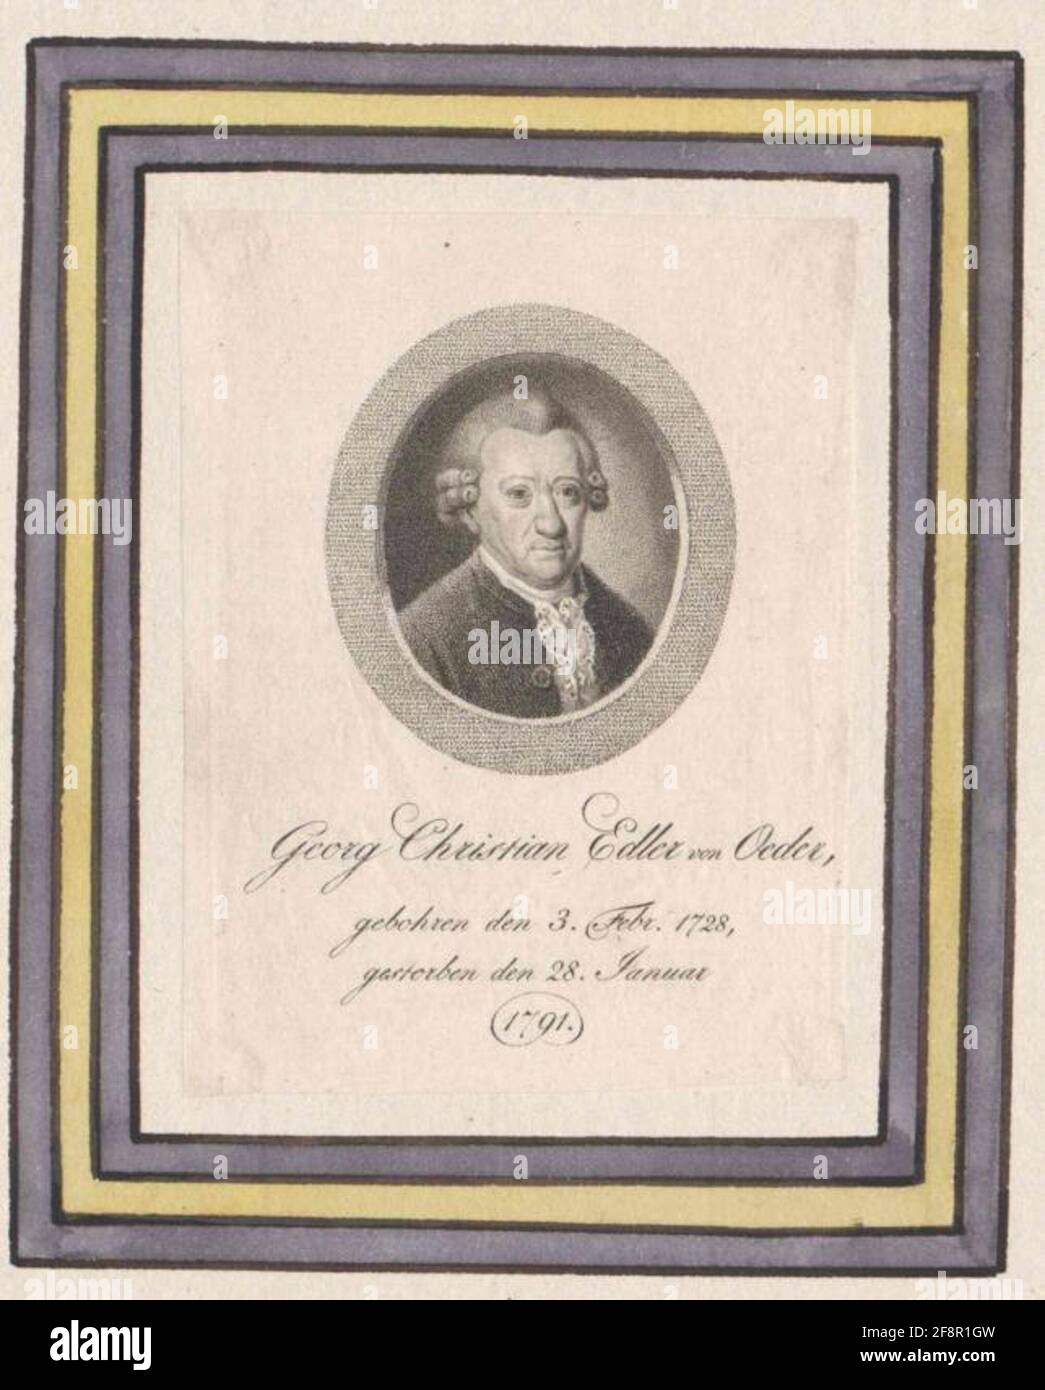 Oeder, Georg Christian von. Stock Photo